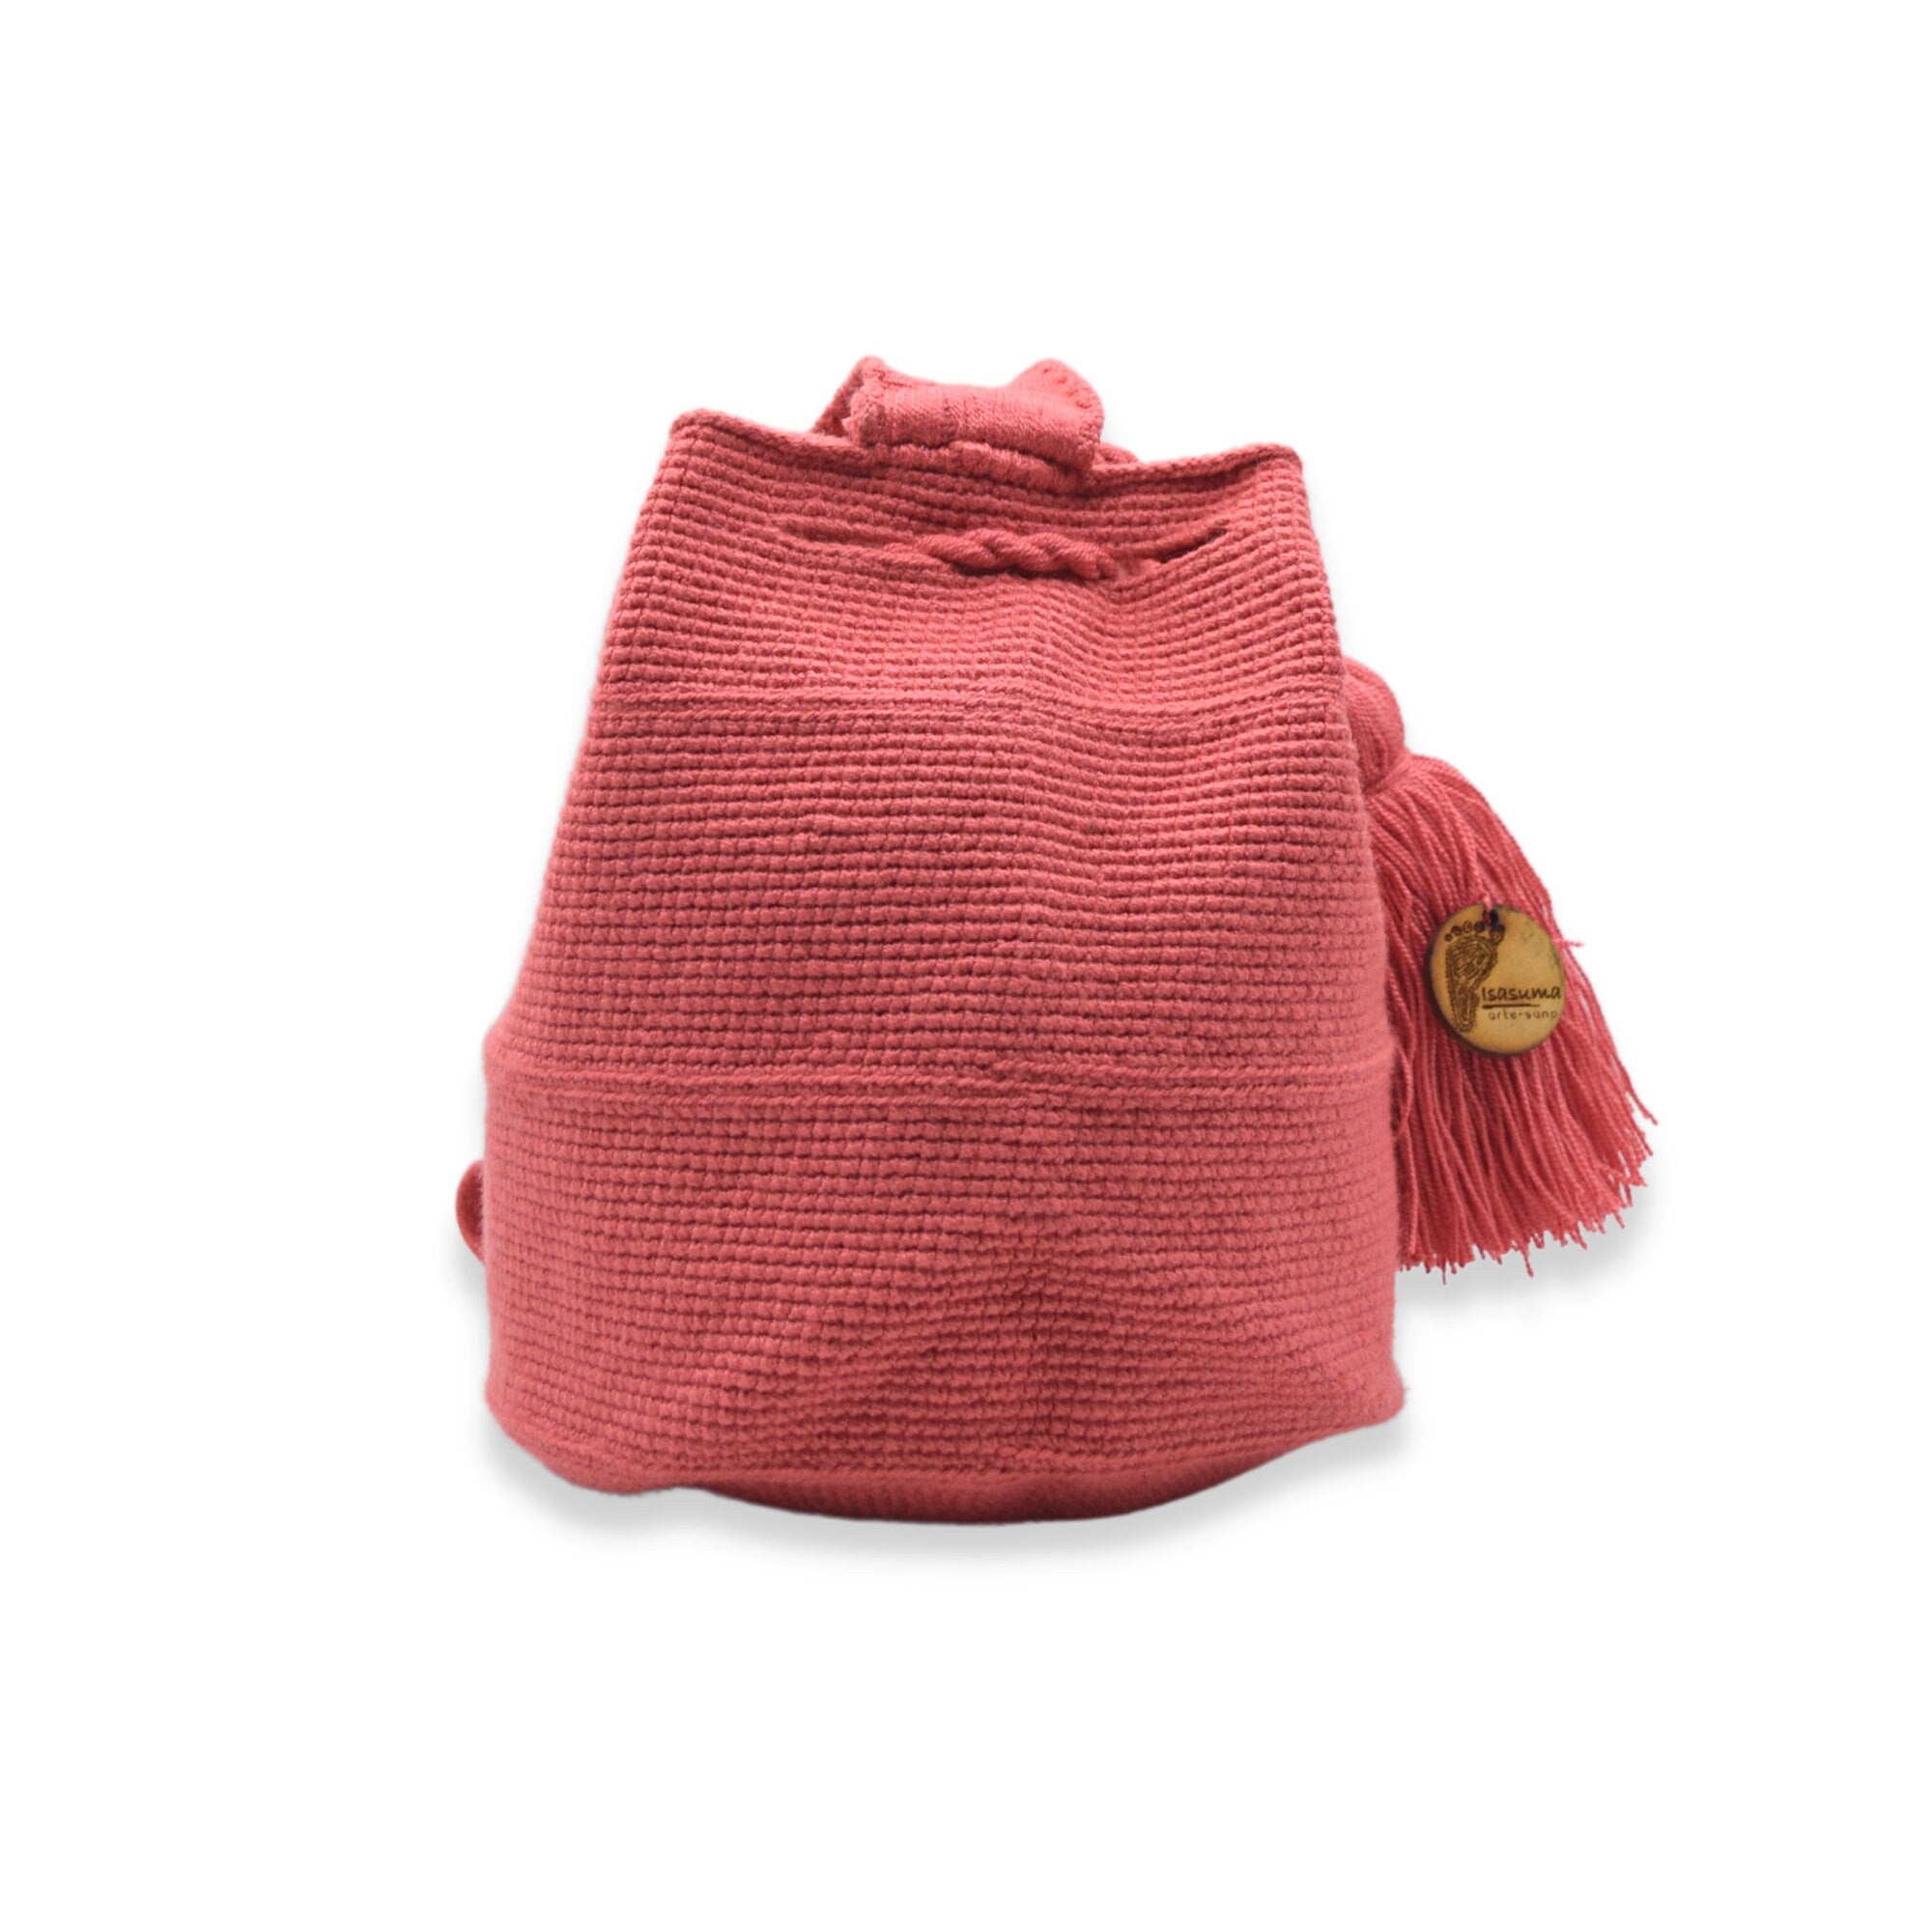 Wayuu mochila bag | Medium Tradicional | Pink solid strap